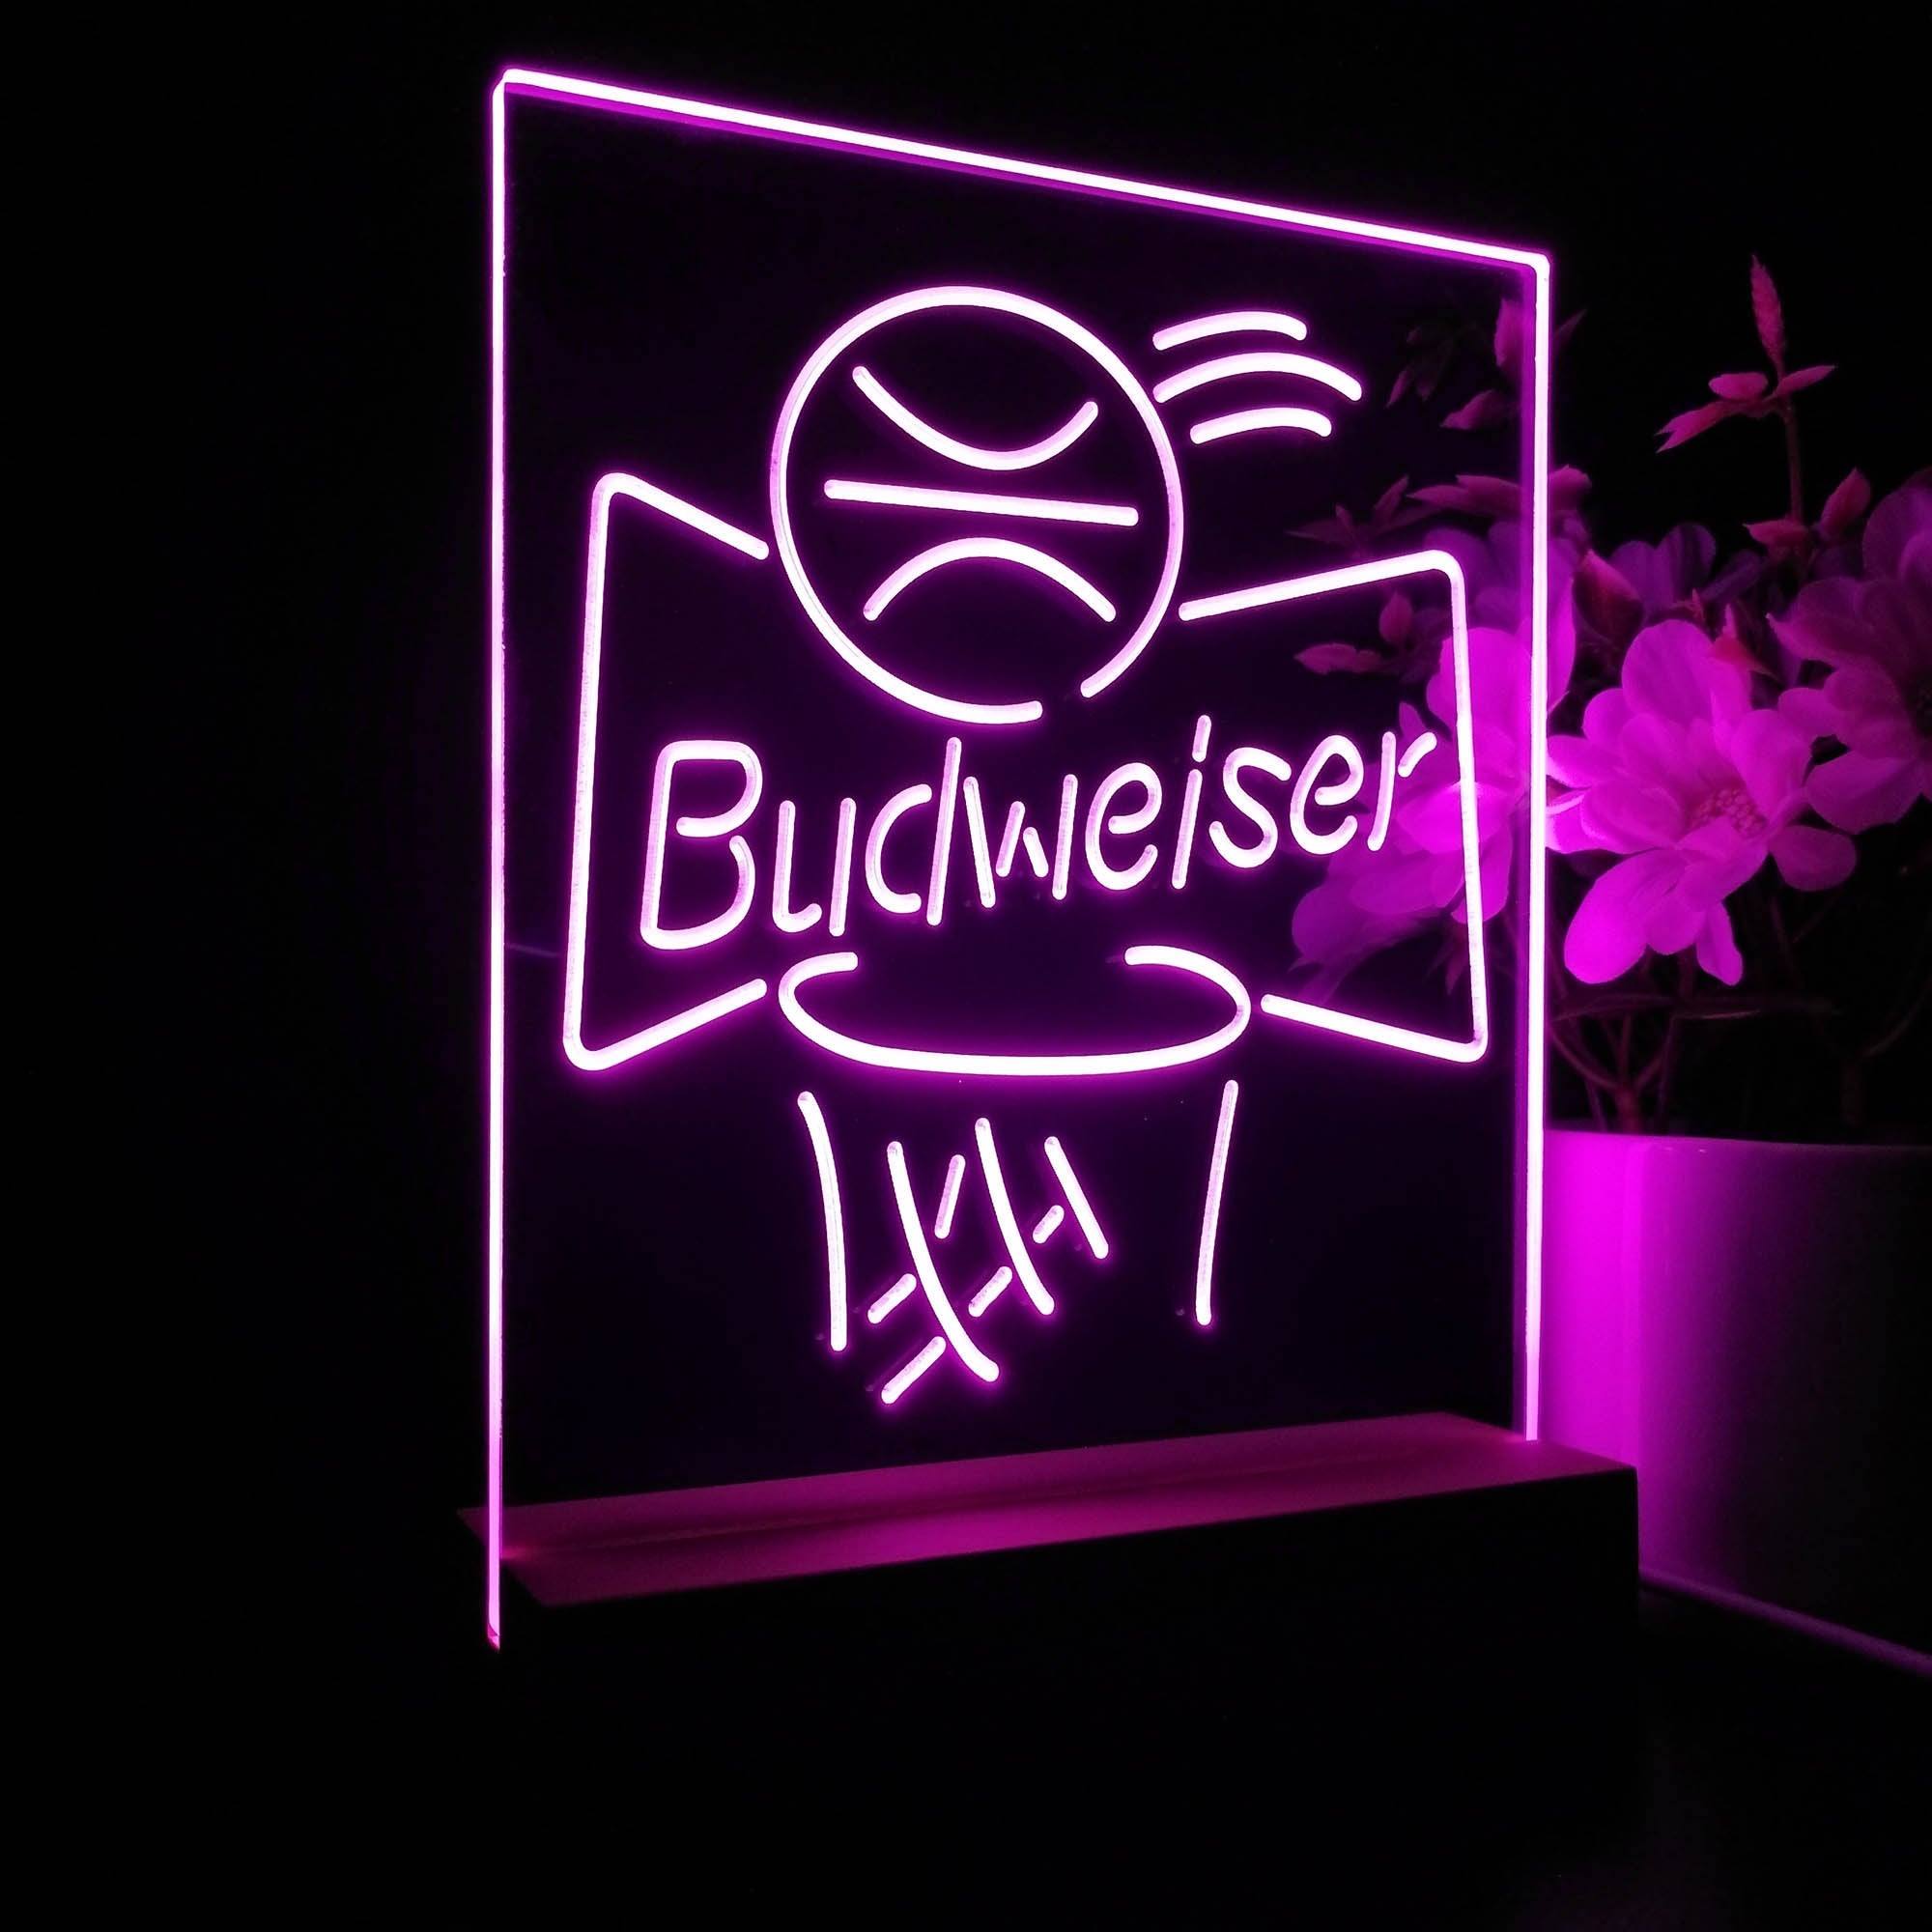 Budweiser Basketball Net Night Light Neon Pub Bar Lamp